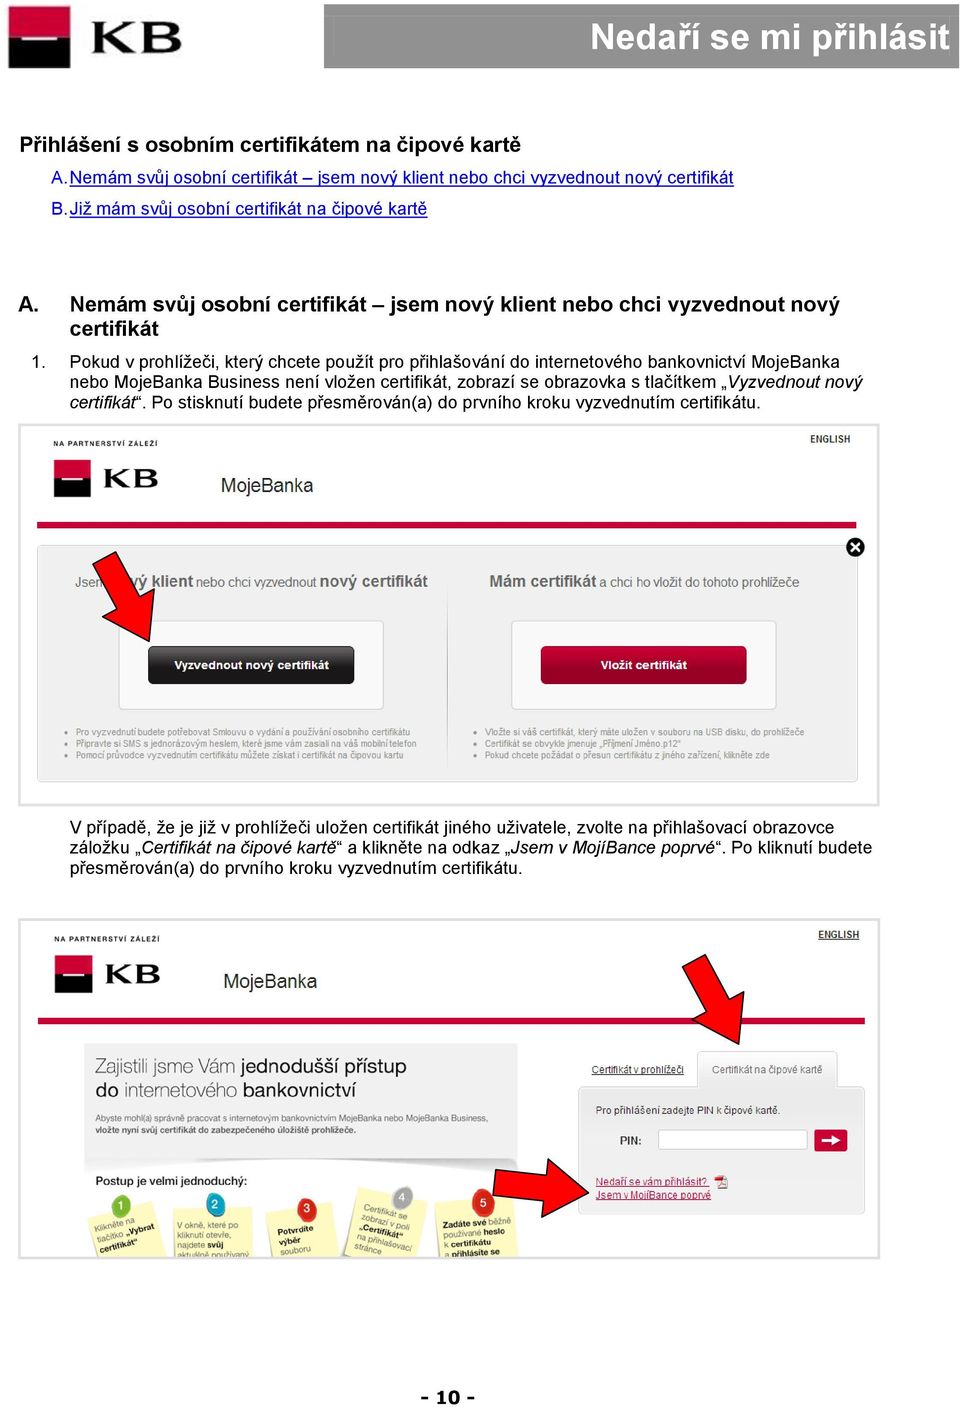 Pokud v prohlížeči, který chcete použít pro přihlašování do internetového bankovnictví MojeBanka nebo MojeBanka Business není vložen certifikát, zobrazí se obrazovka s tlačítkem Vyzvednout nový